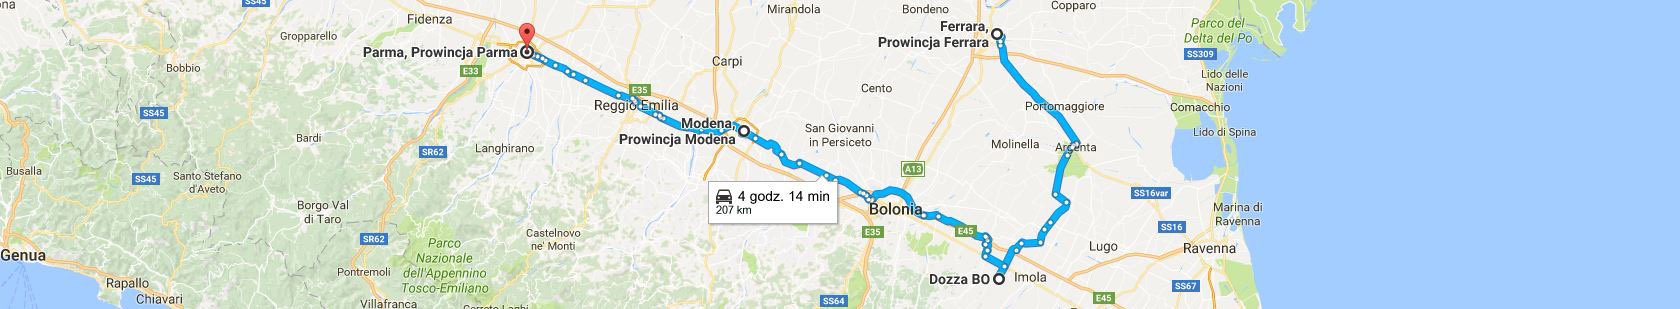 Trasa Ferrara - Parma